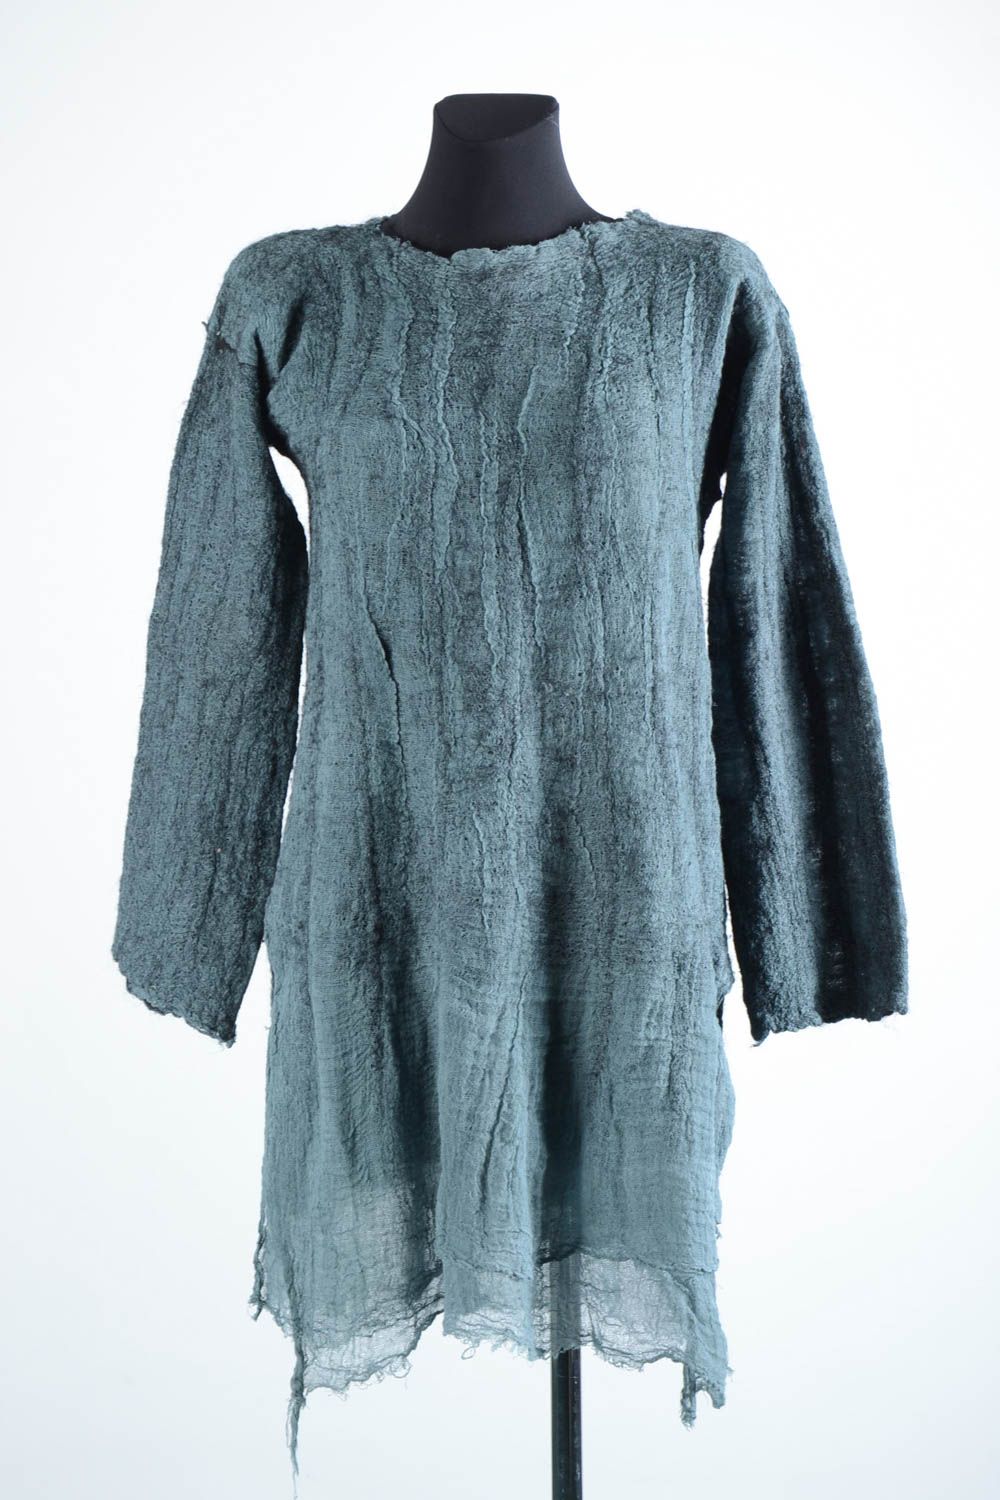 Robe femme fait main Robe laine gris bleu feutrage Vêtement femme de mode photo 1